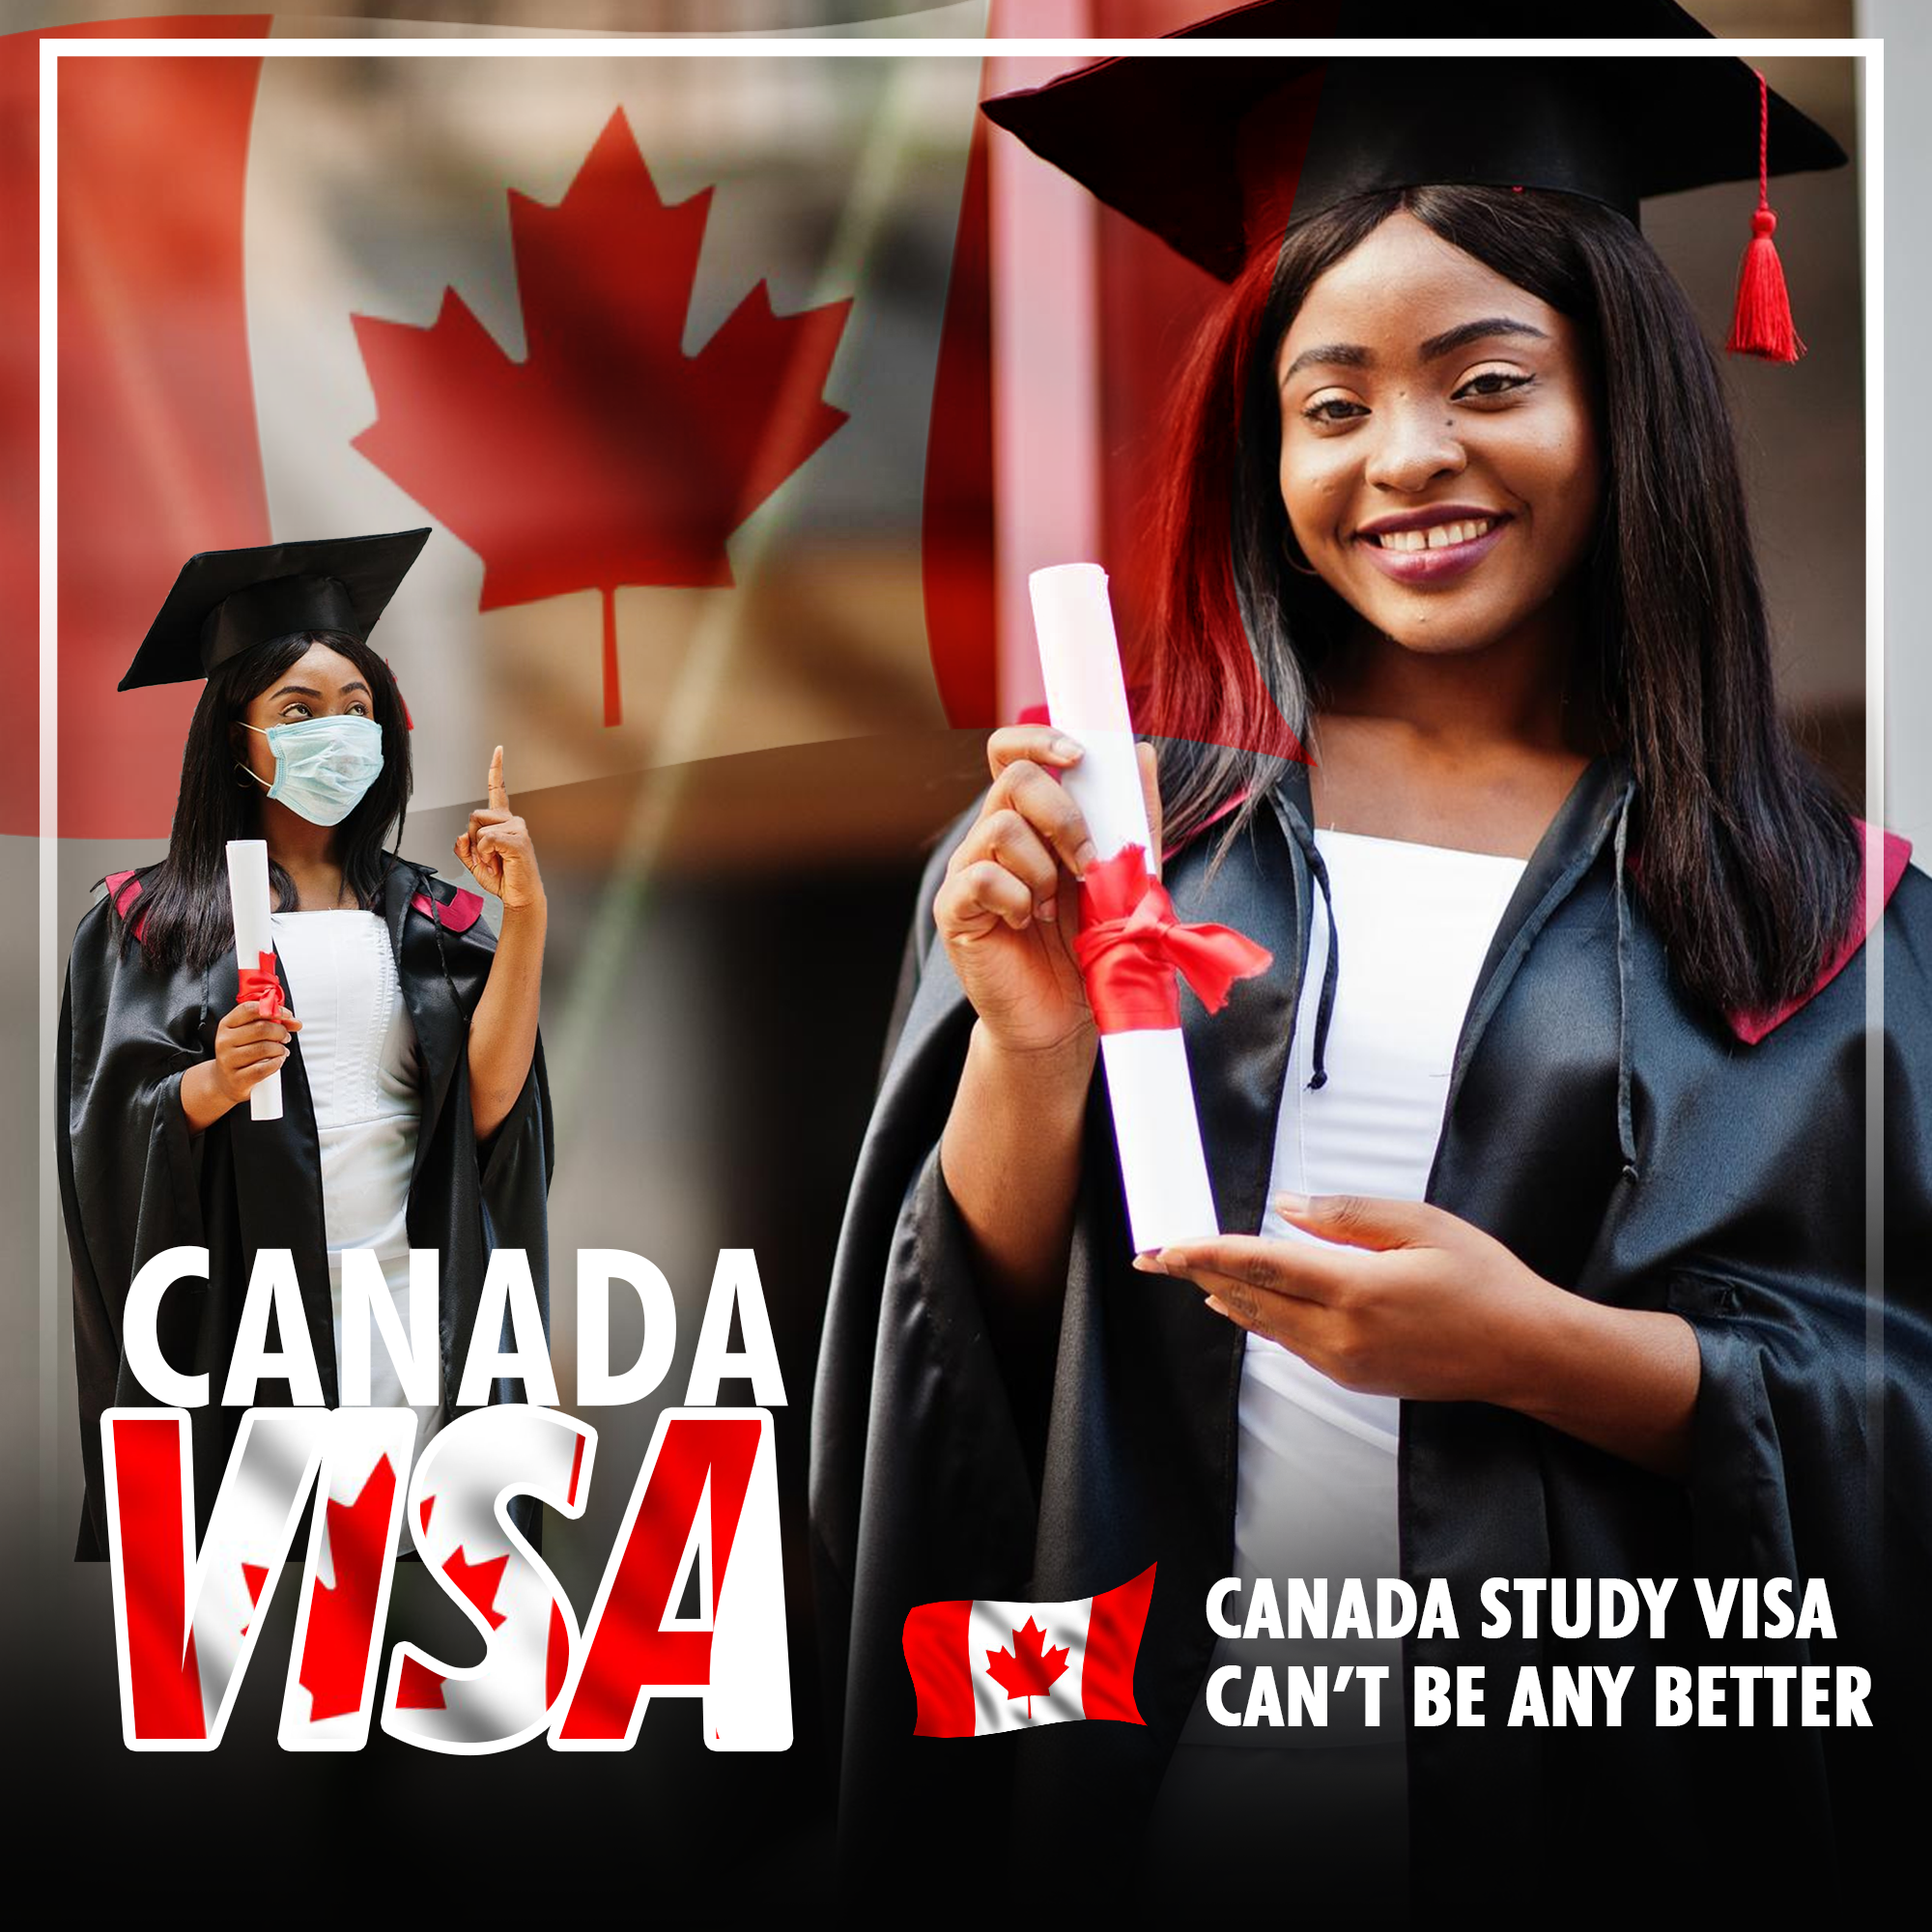 Canada Student Visa web